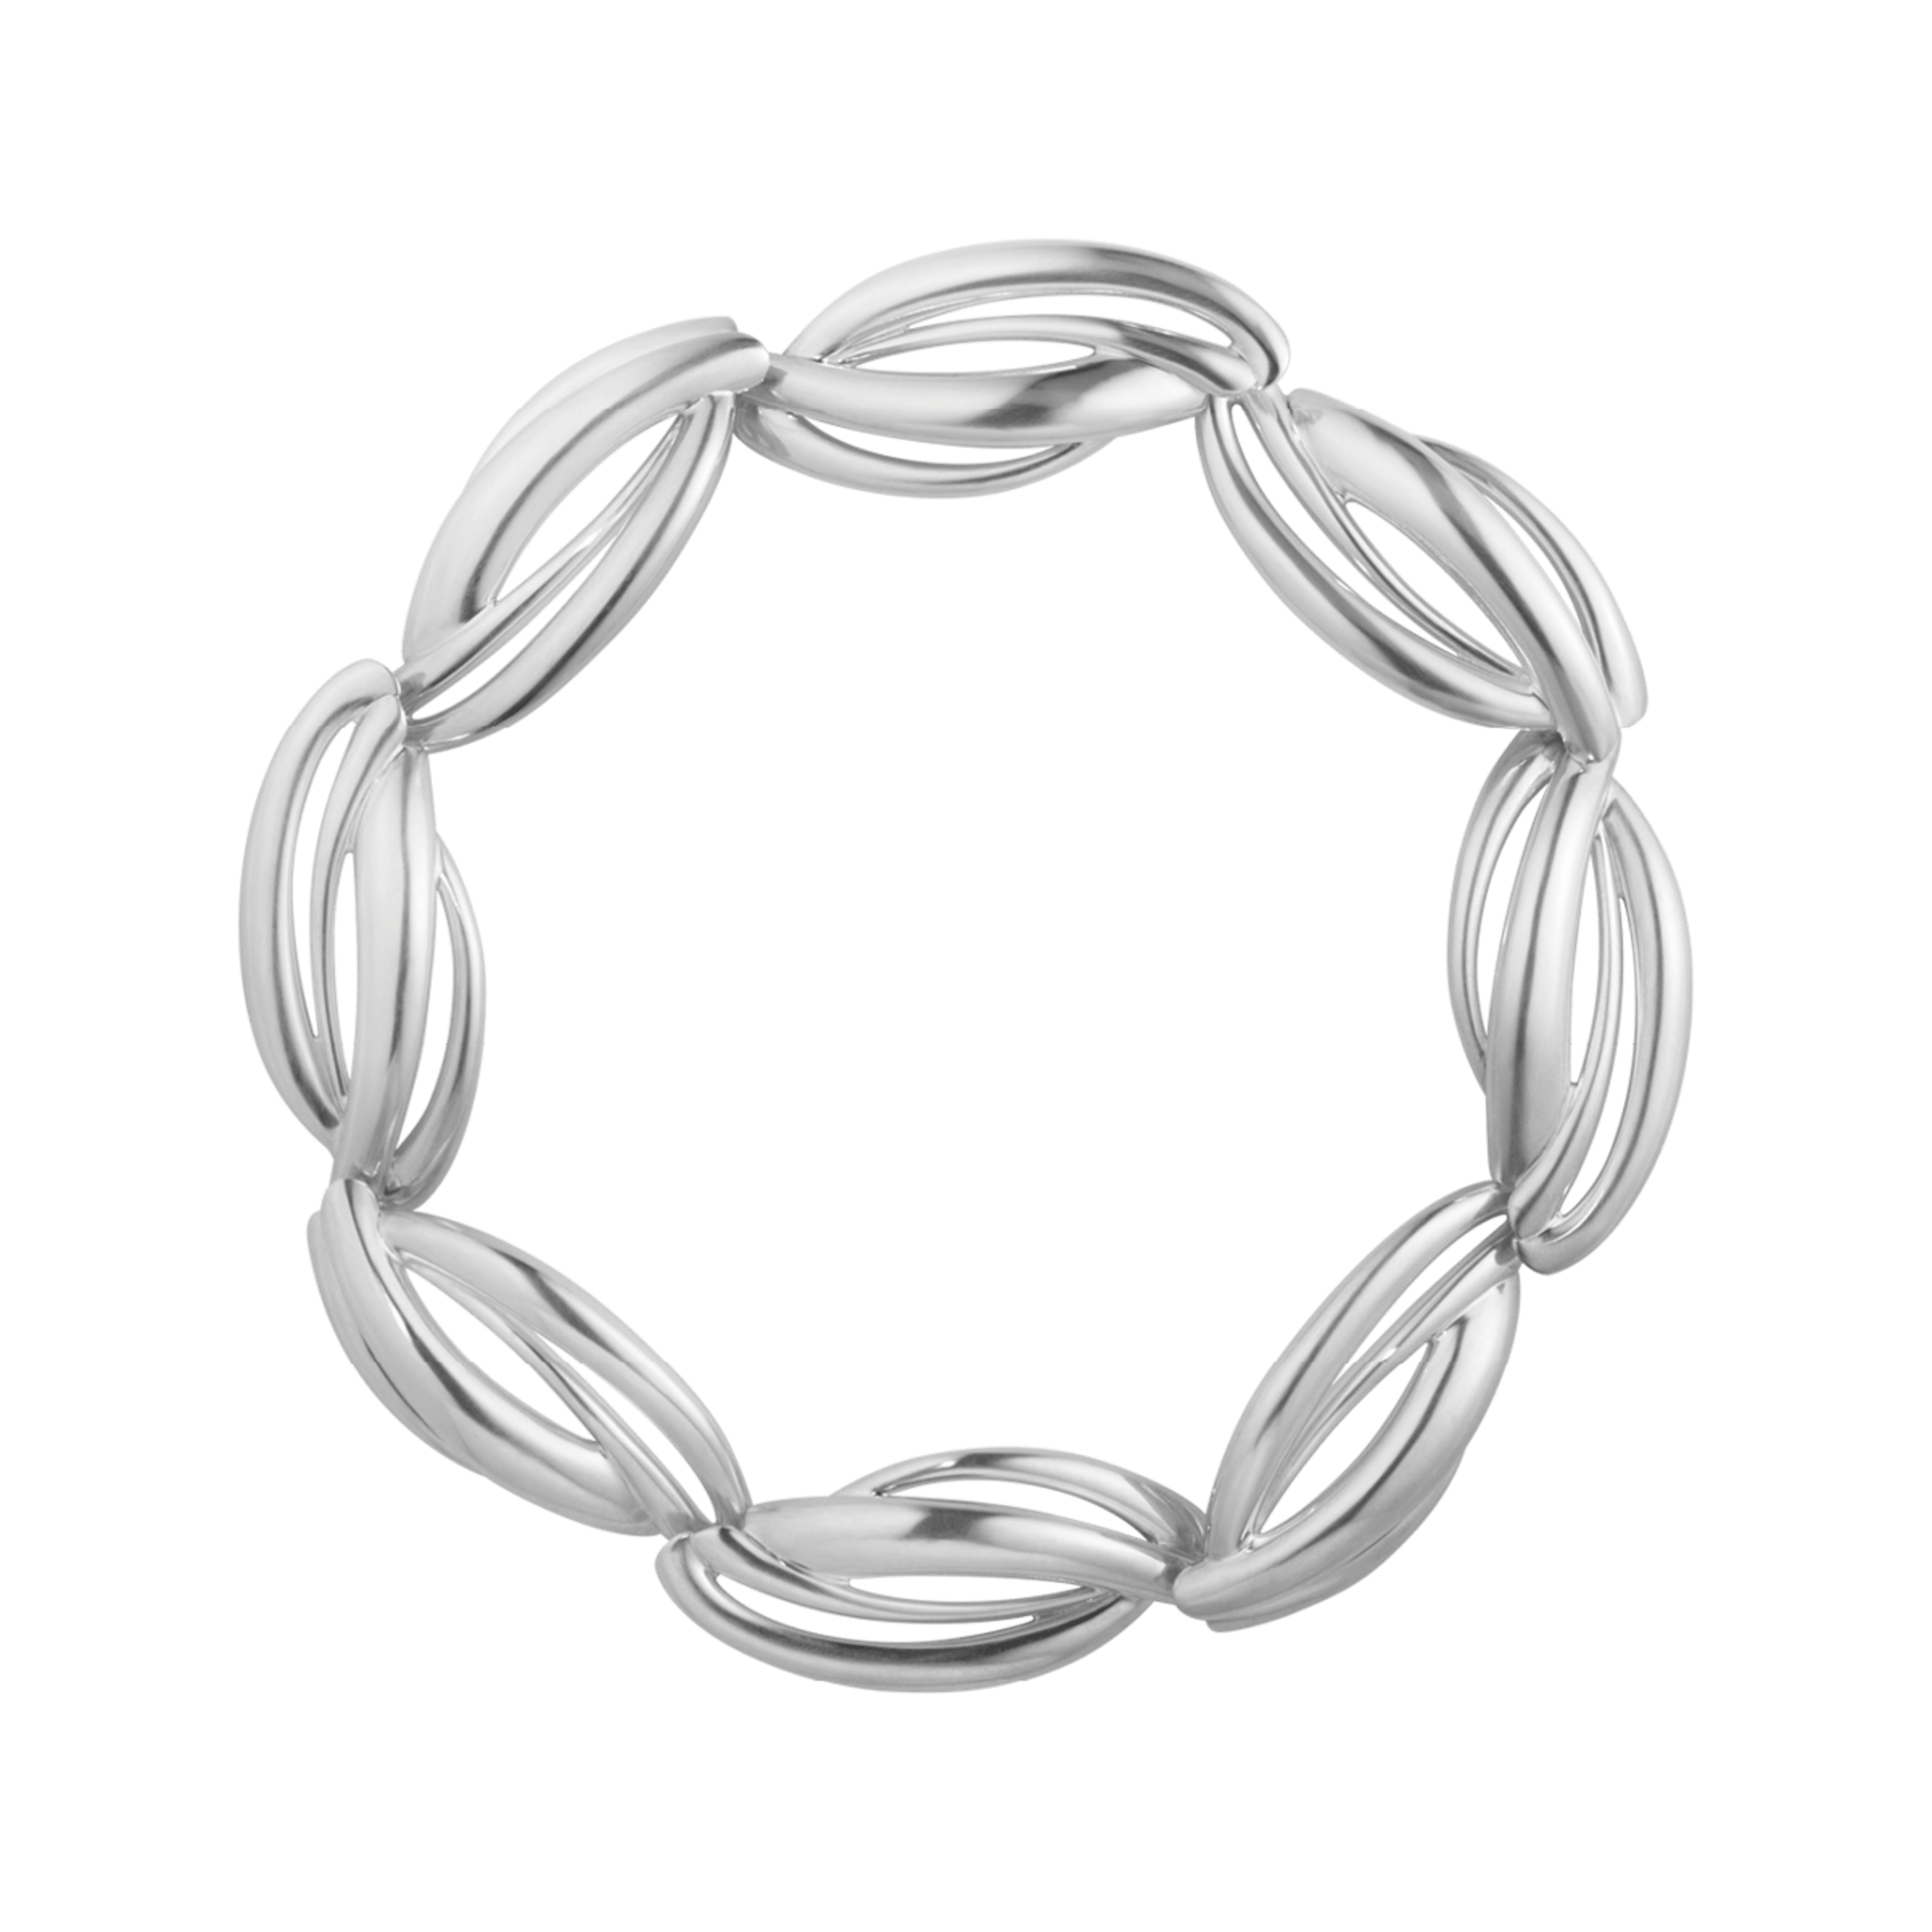 Arc halskæde fra Georg Jensen